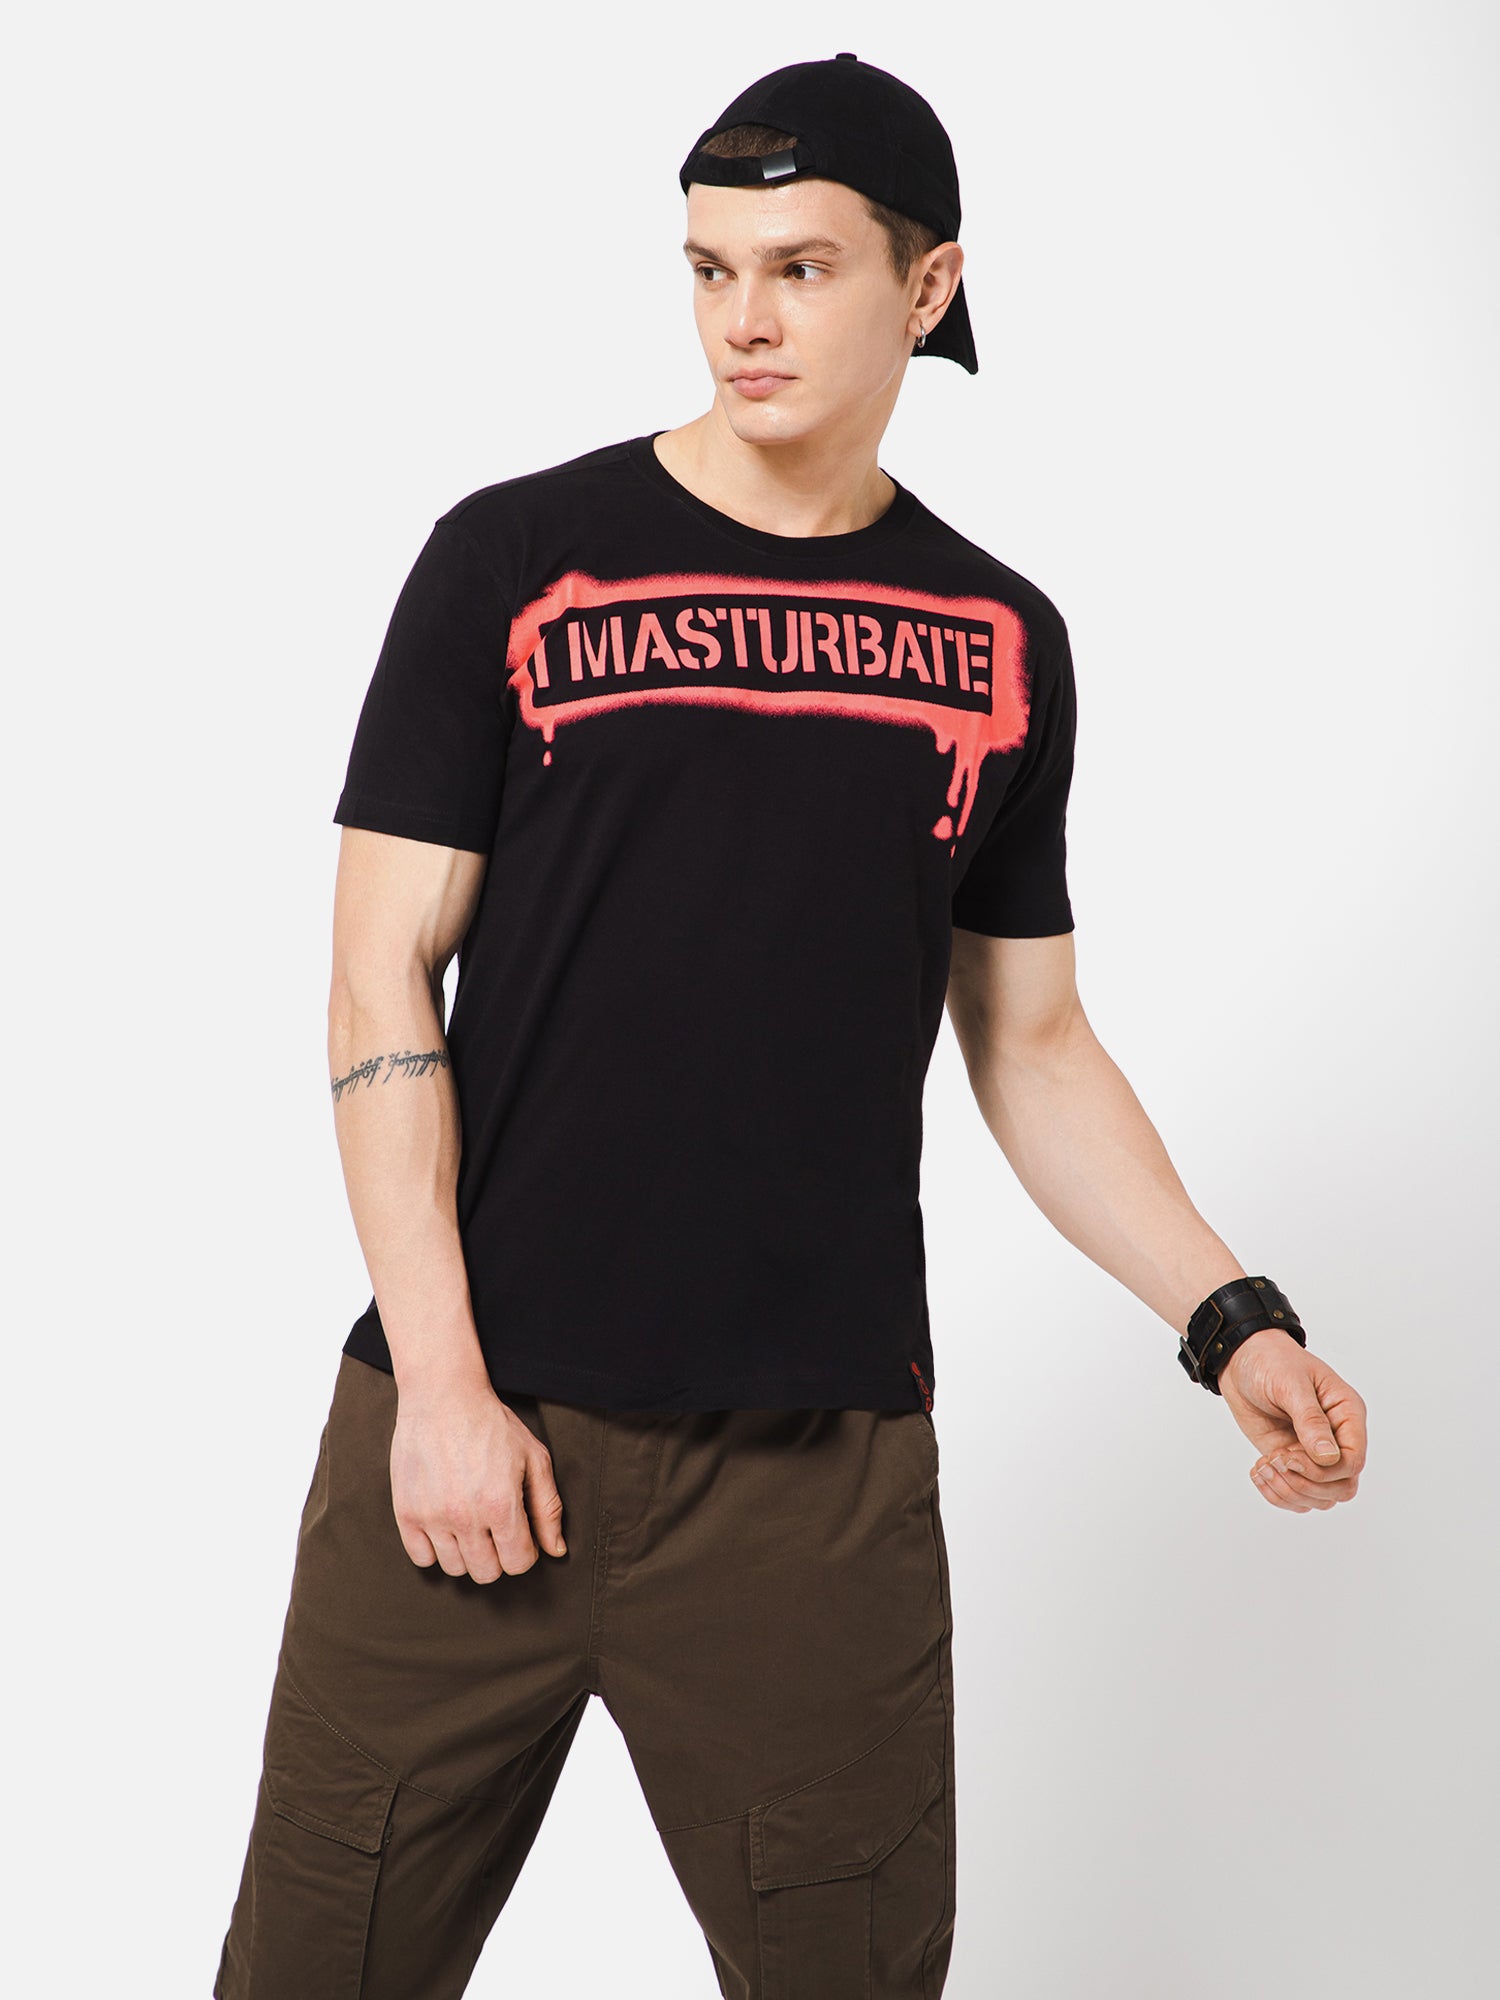 I MASTURBATE Punk Black Printed Tshirt